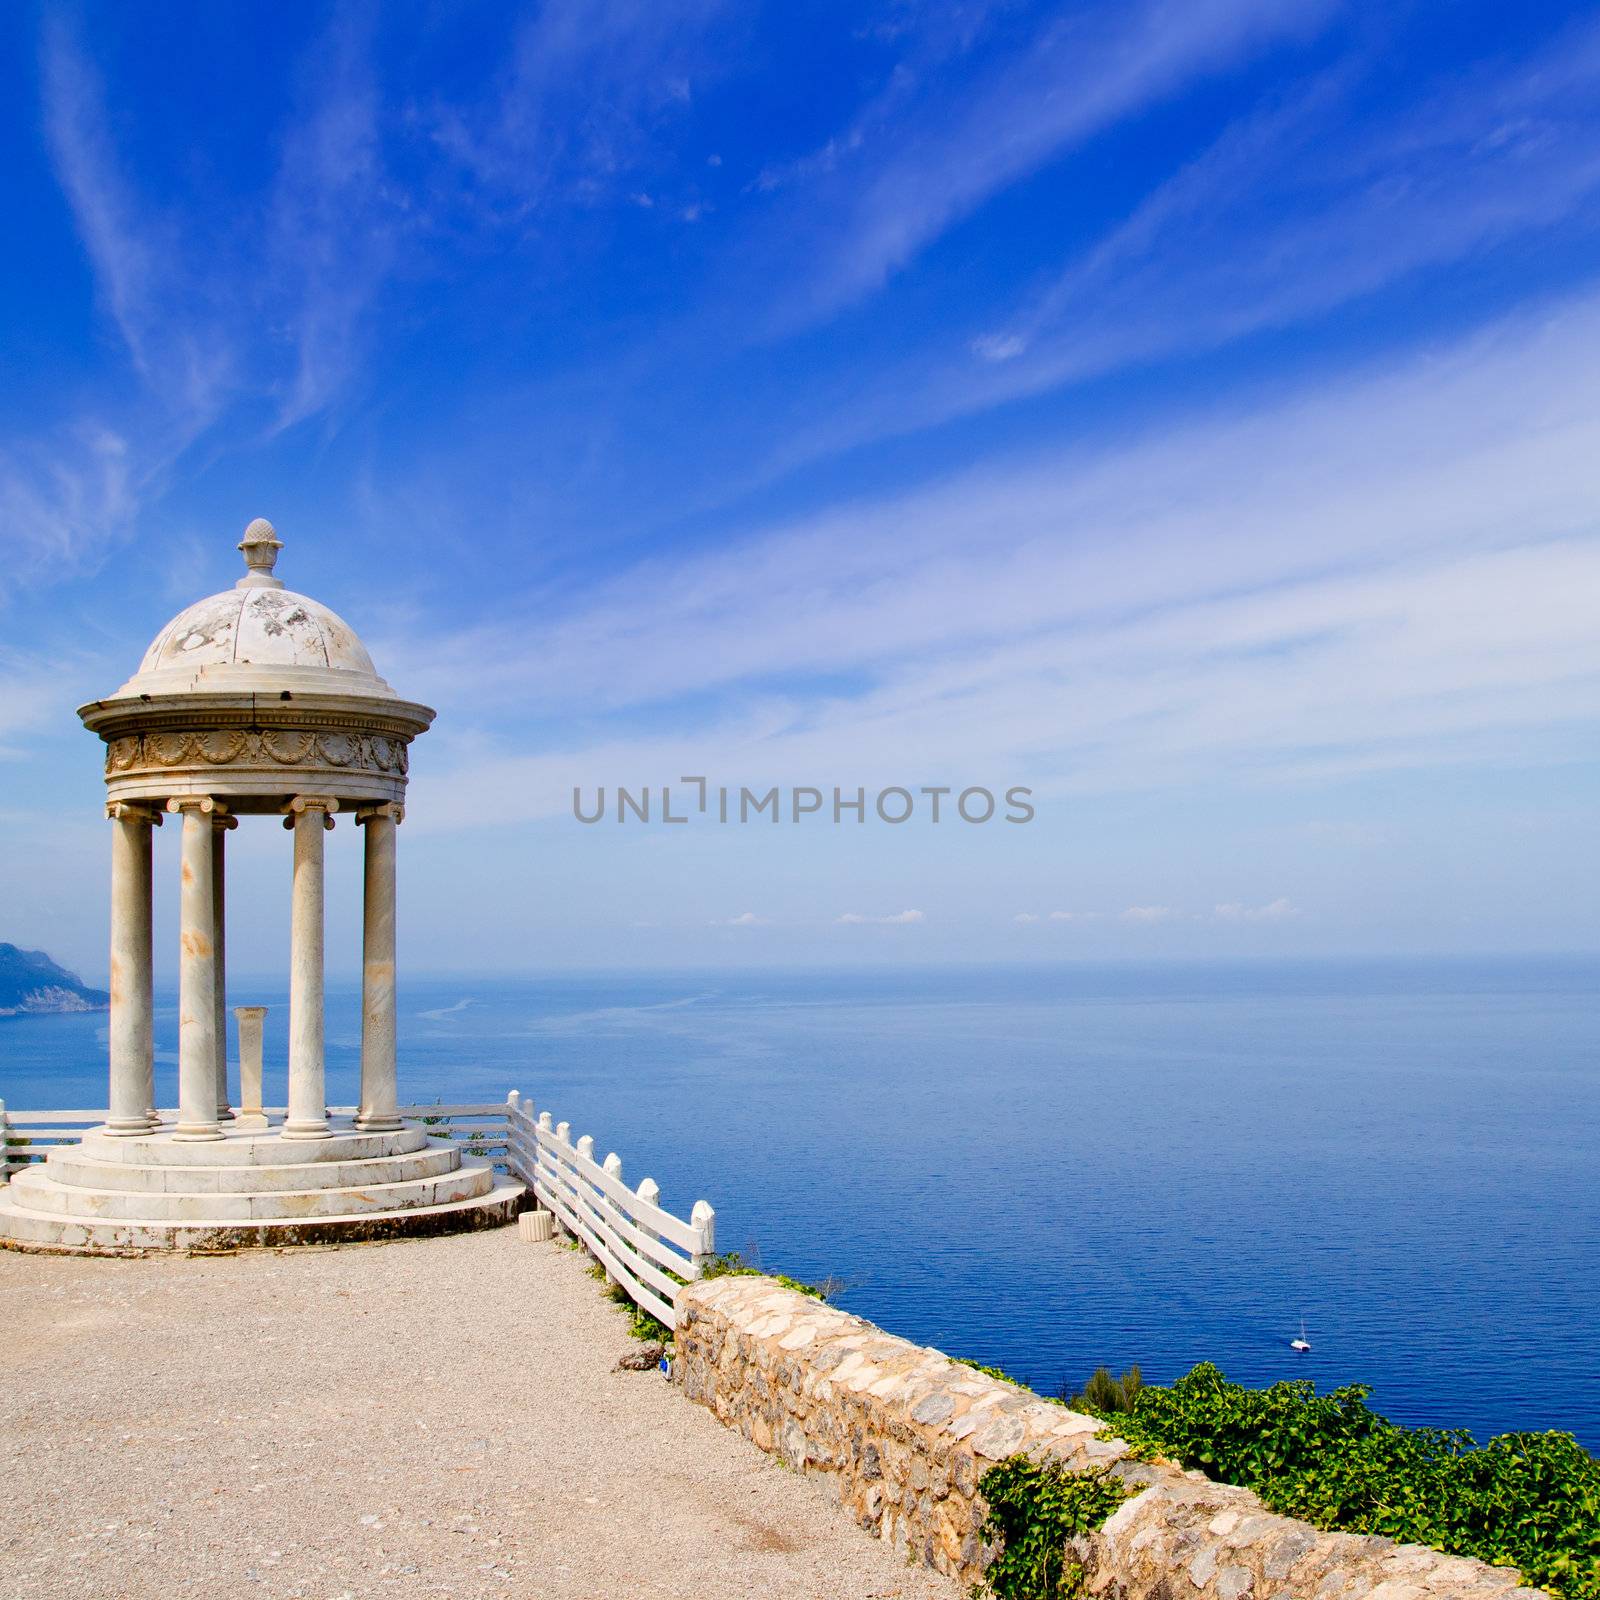 es Galliner mirador in Son Marroig over Mediterranean Majorca sea